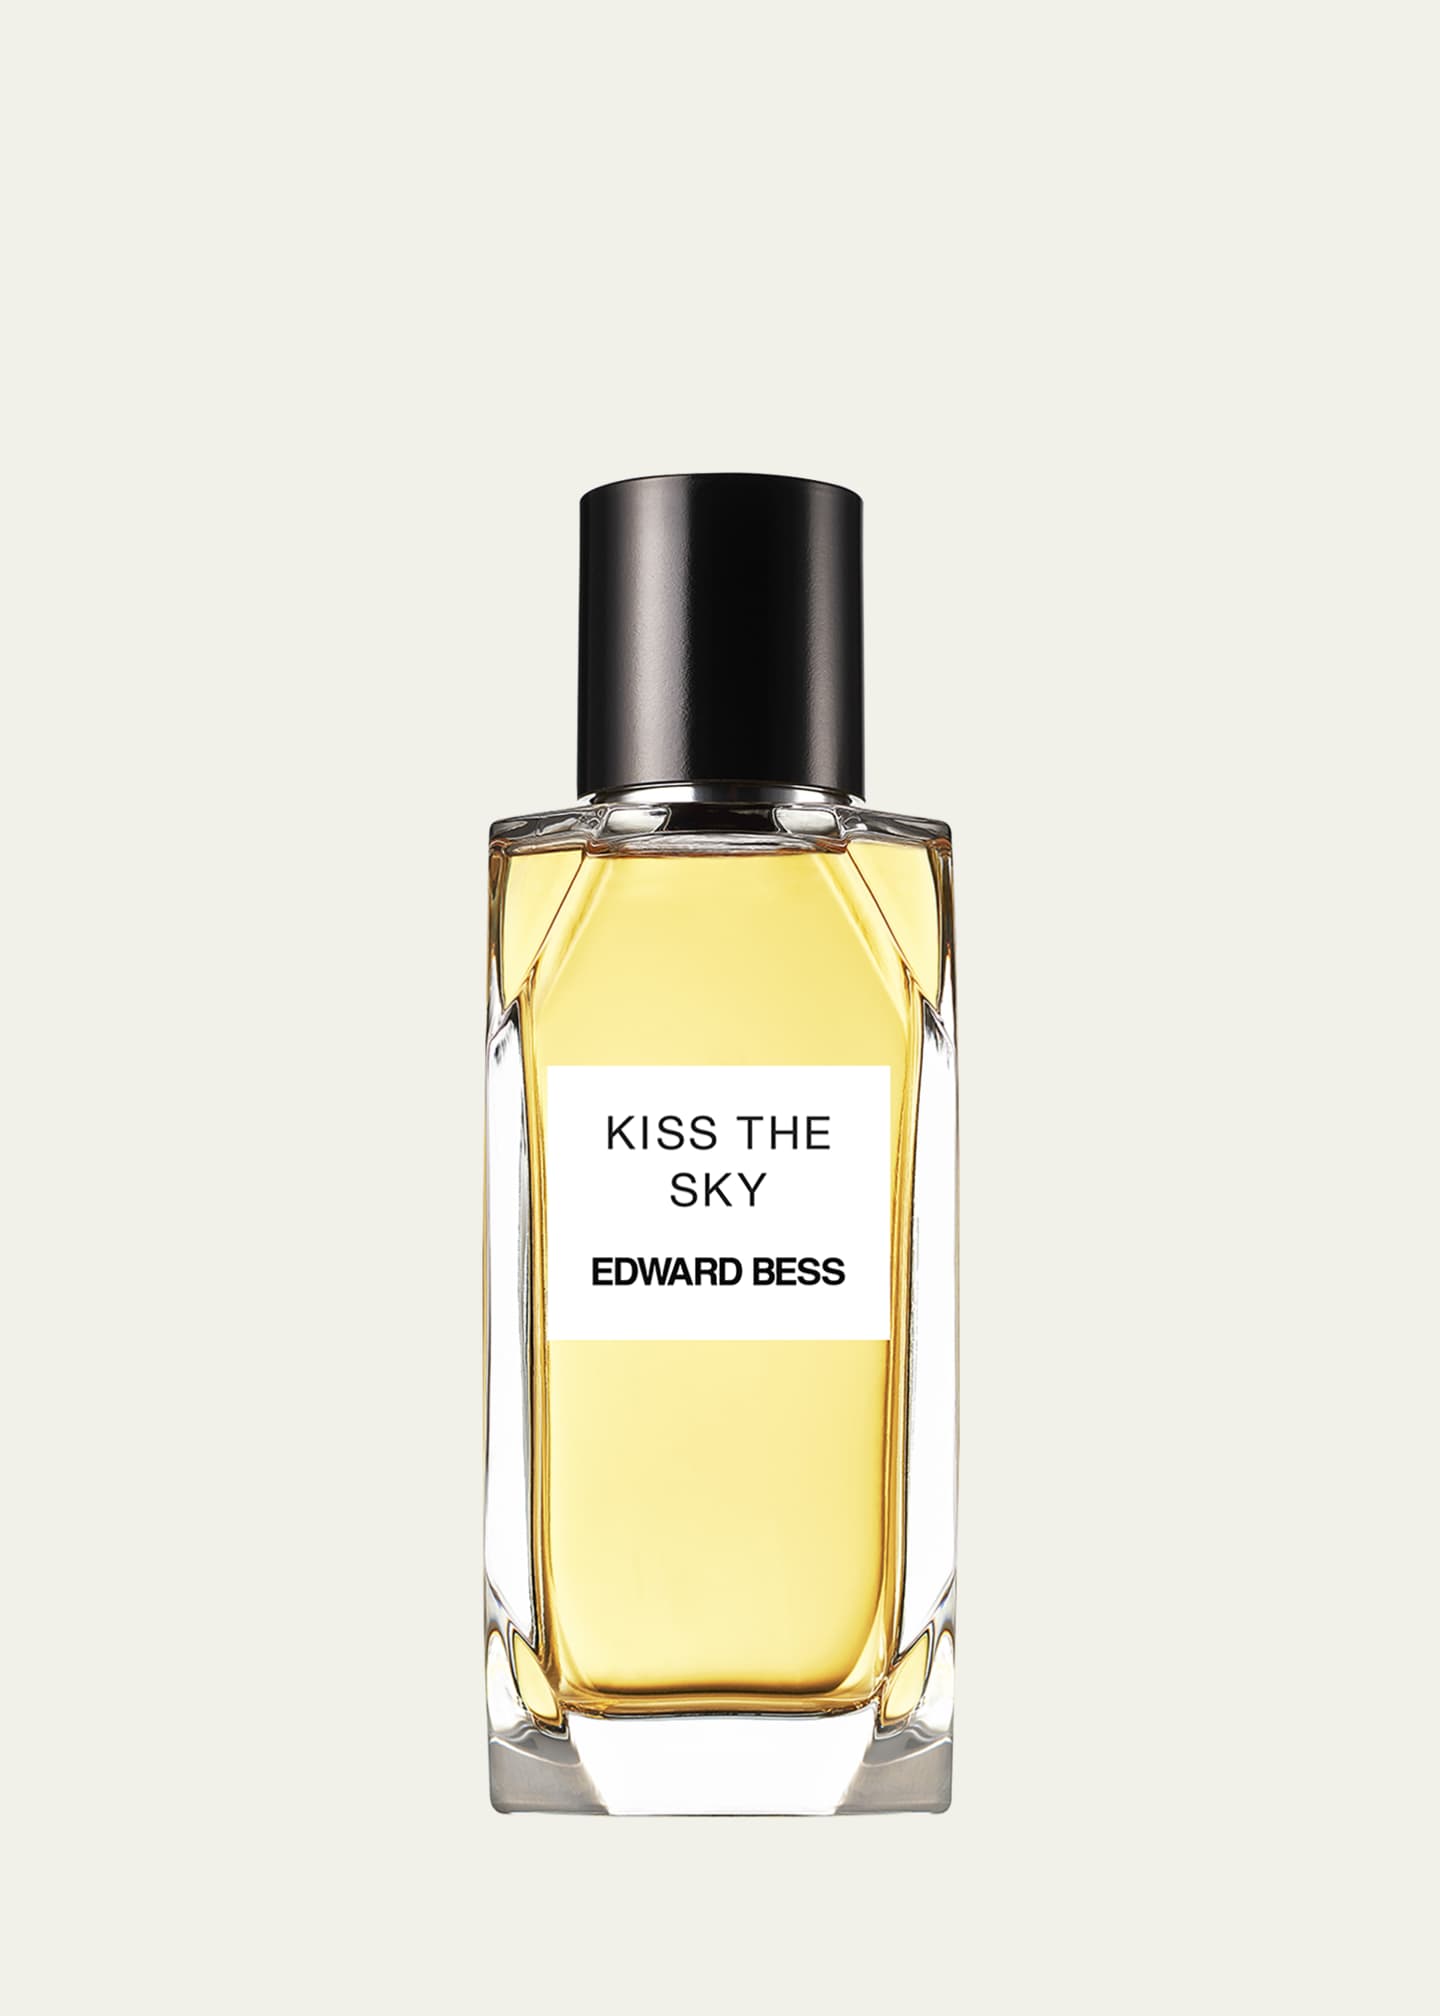 Edward Bess Kiss The Sky Eau de Parfum, 3.4 oz. - Bergdorf Goodman